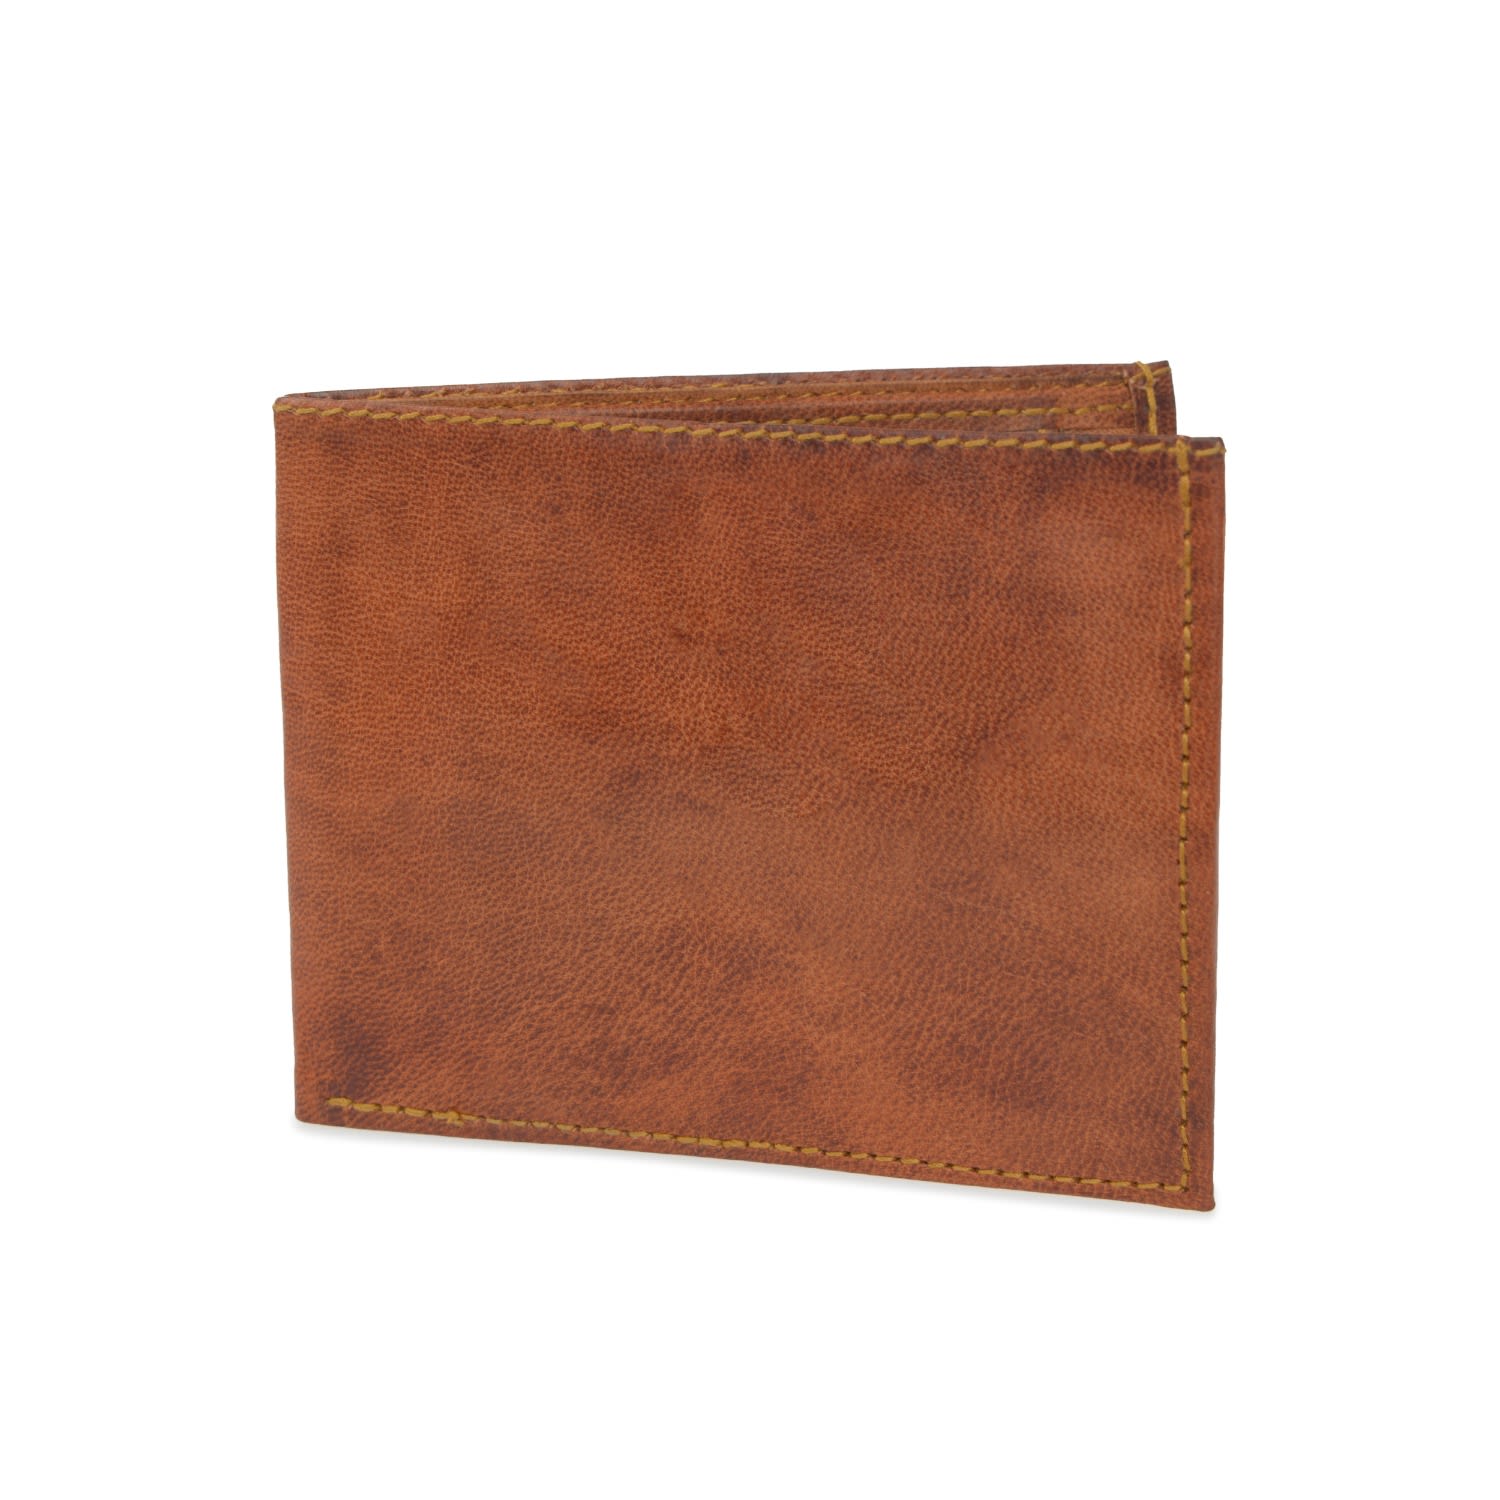 Vida Vida Men's Brown Vida Vintage Leather Wallet